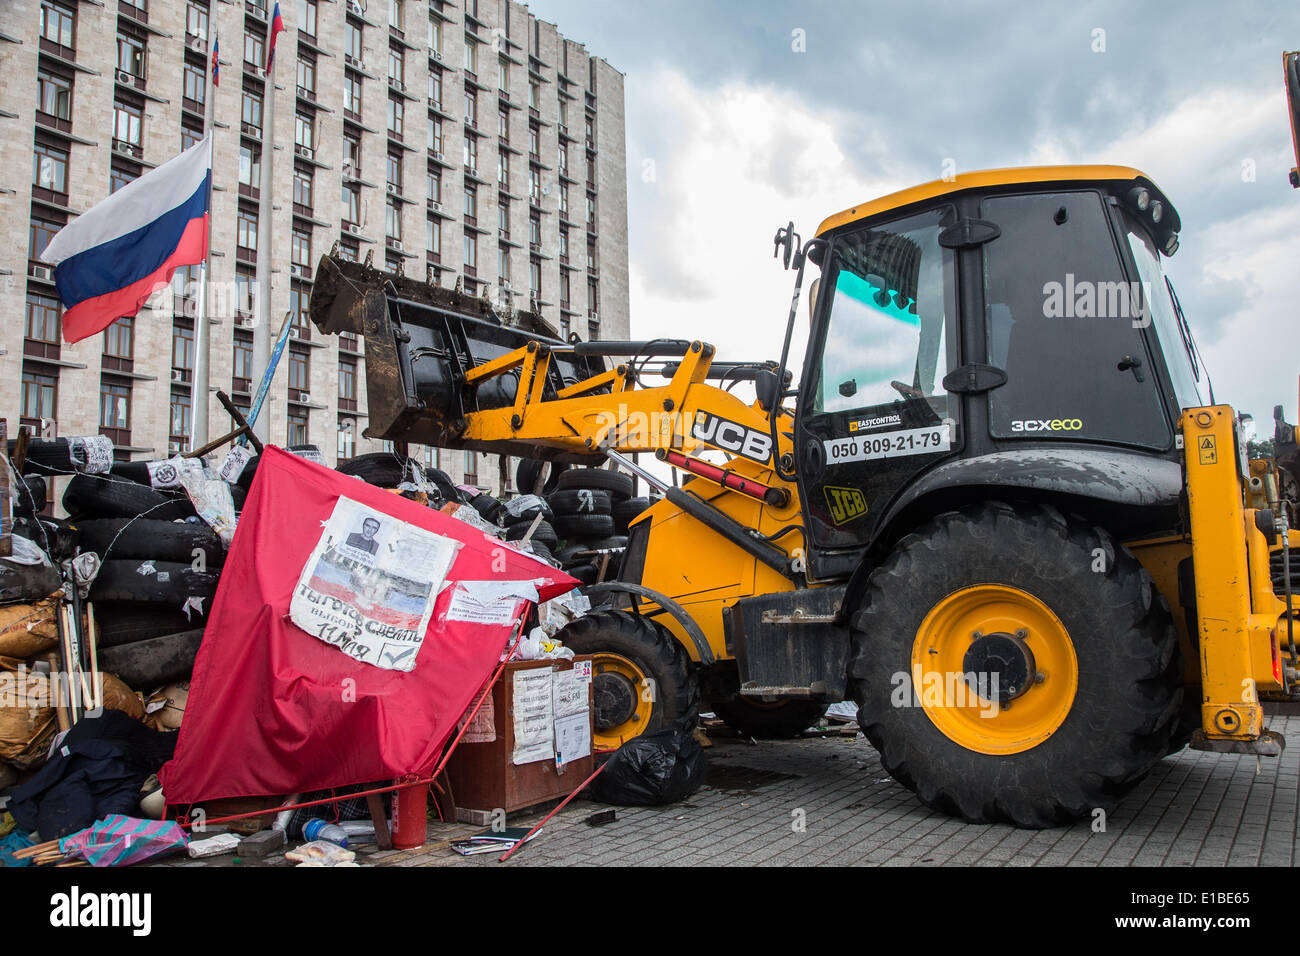 Baumaschinen entfernen am 29.05.2014 in Donezk, Ucraina, Barrikaden, die vorher von separatistischen, pro-russischen Kämpfern errichtet worden waren. Foto: Jan A. Nicolas/dpa Foto Stock